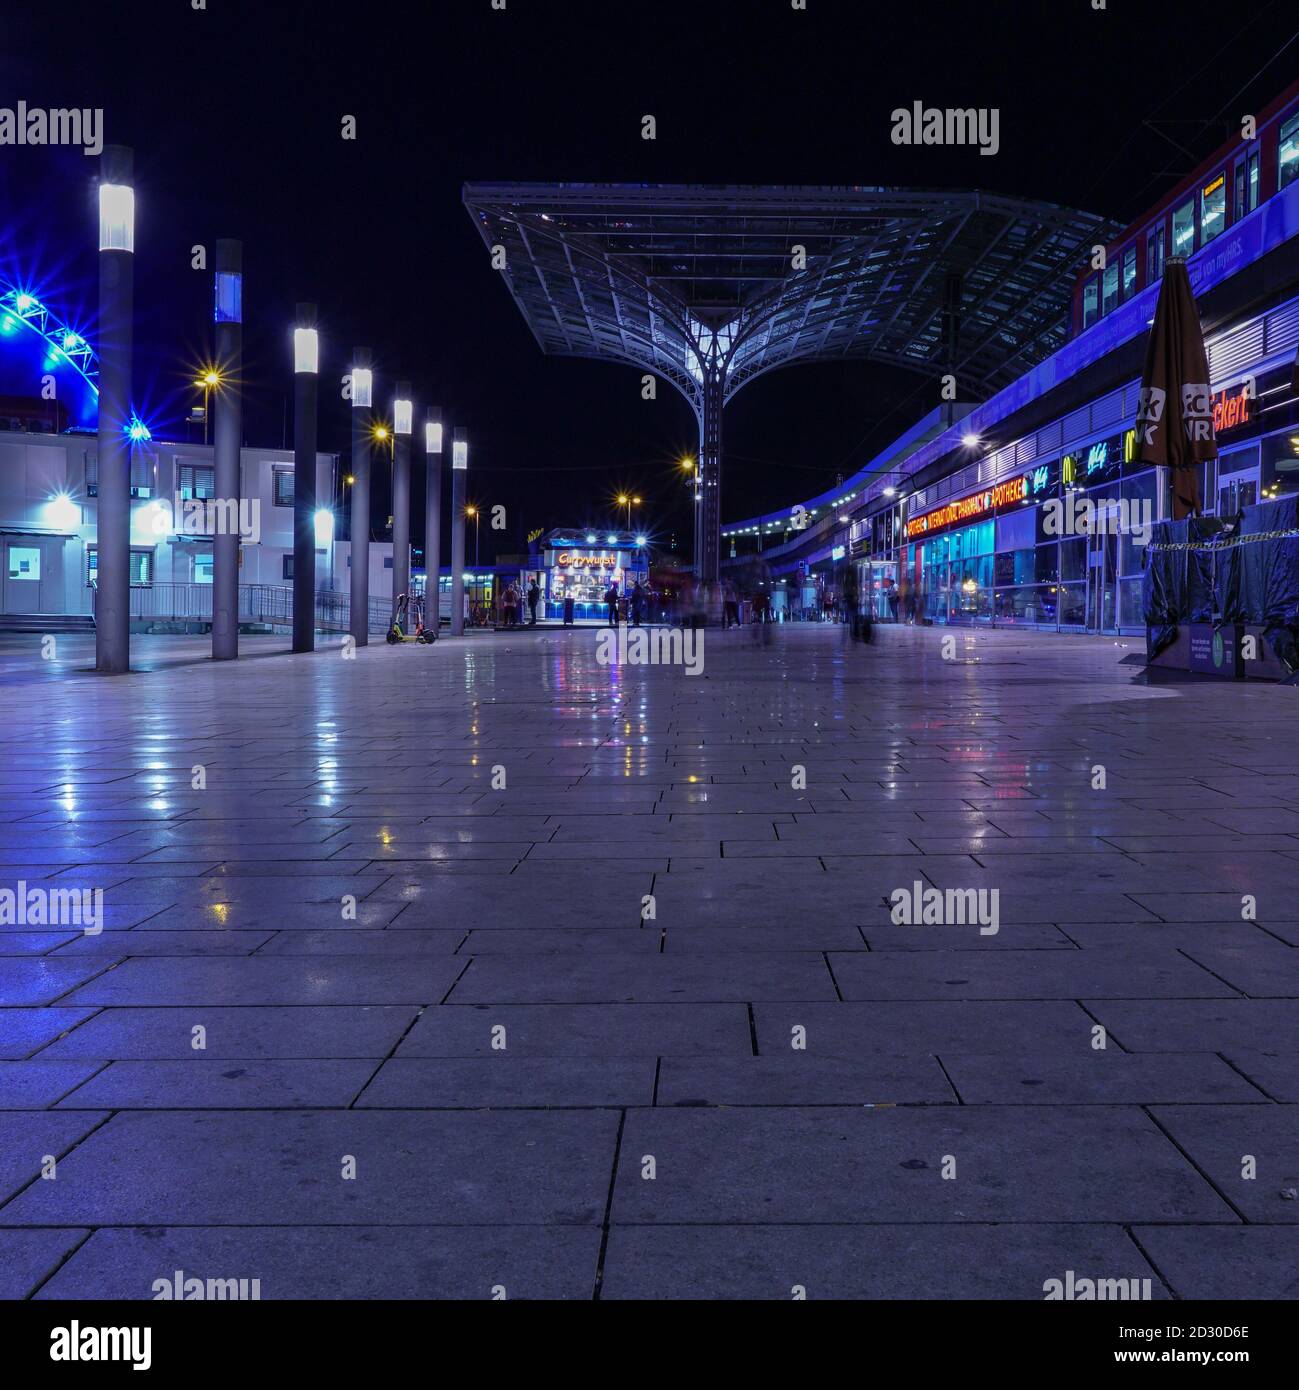 COLO, DEUTSCHLAND - 13. Sep 2020: Interessante Architektur und gestalteter Platz neben dem Hauptbahnhof in köln bei Nacht Stockfoto